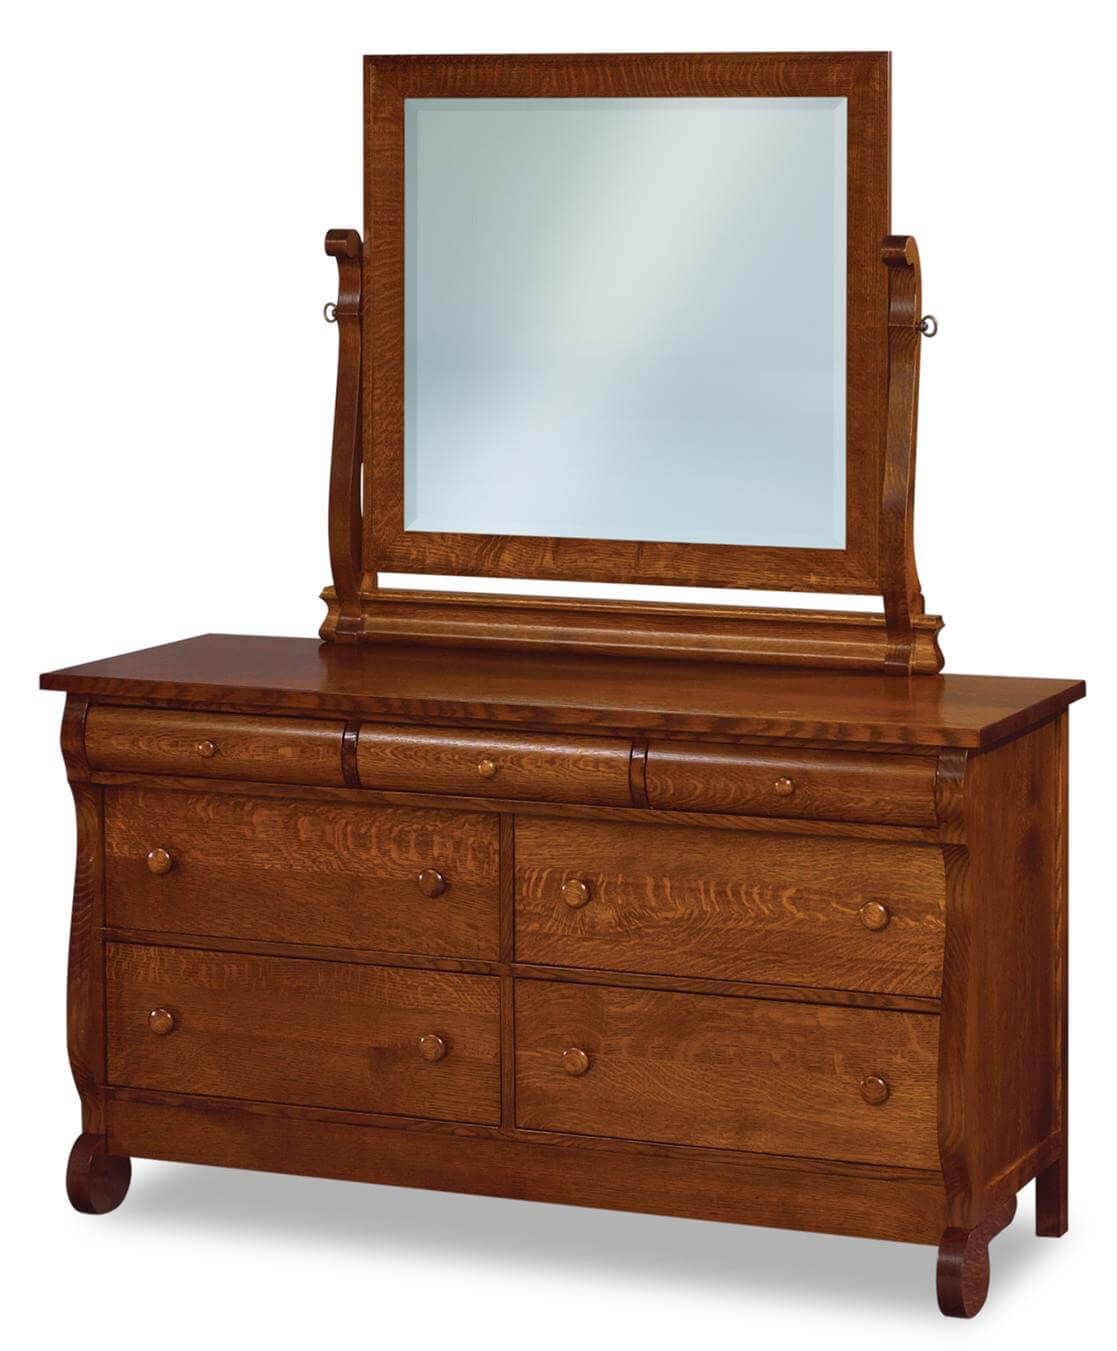 Victoria Sleigh Mule Dresser with Mirror